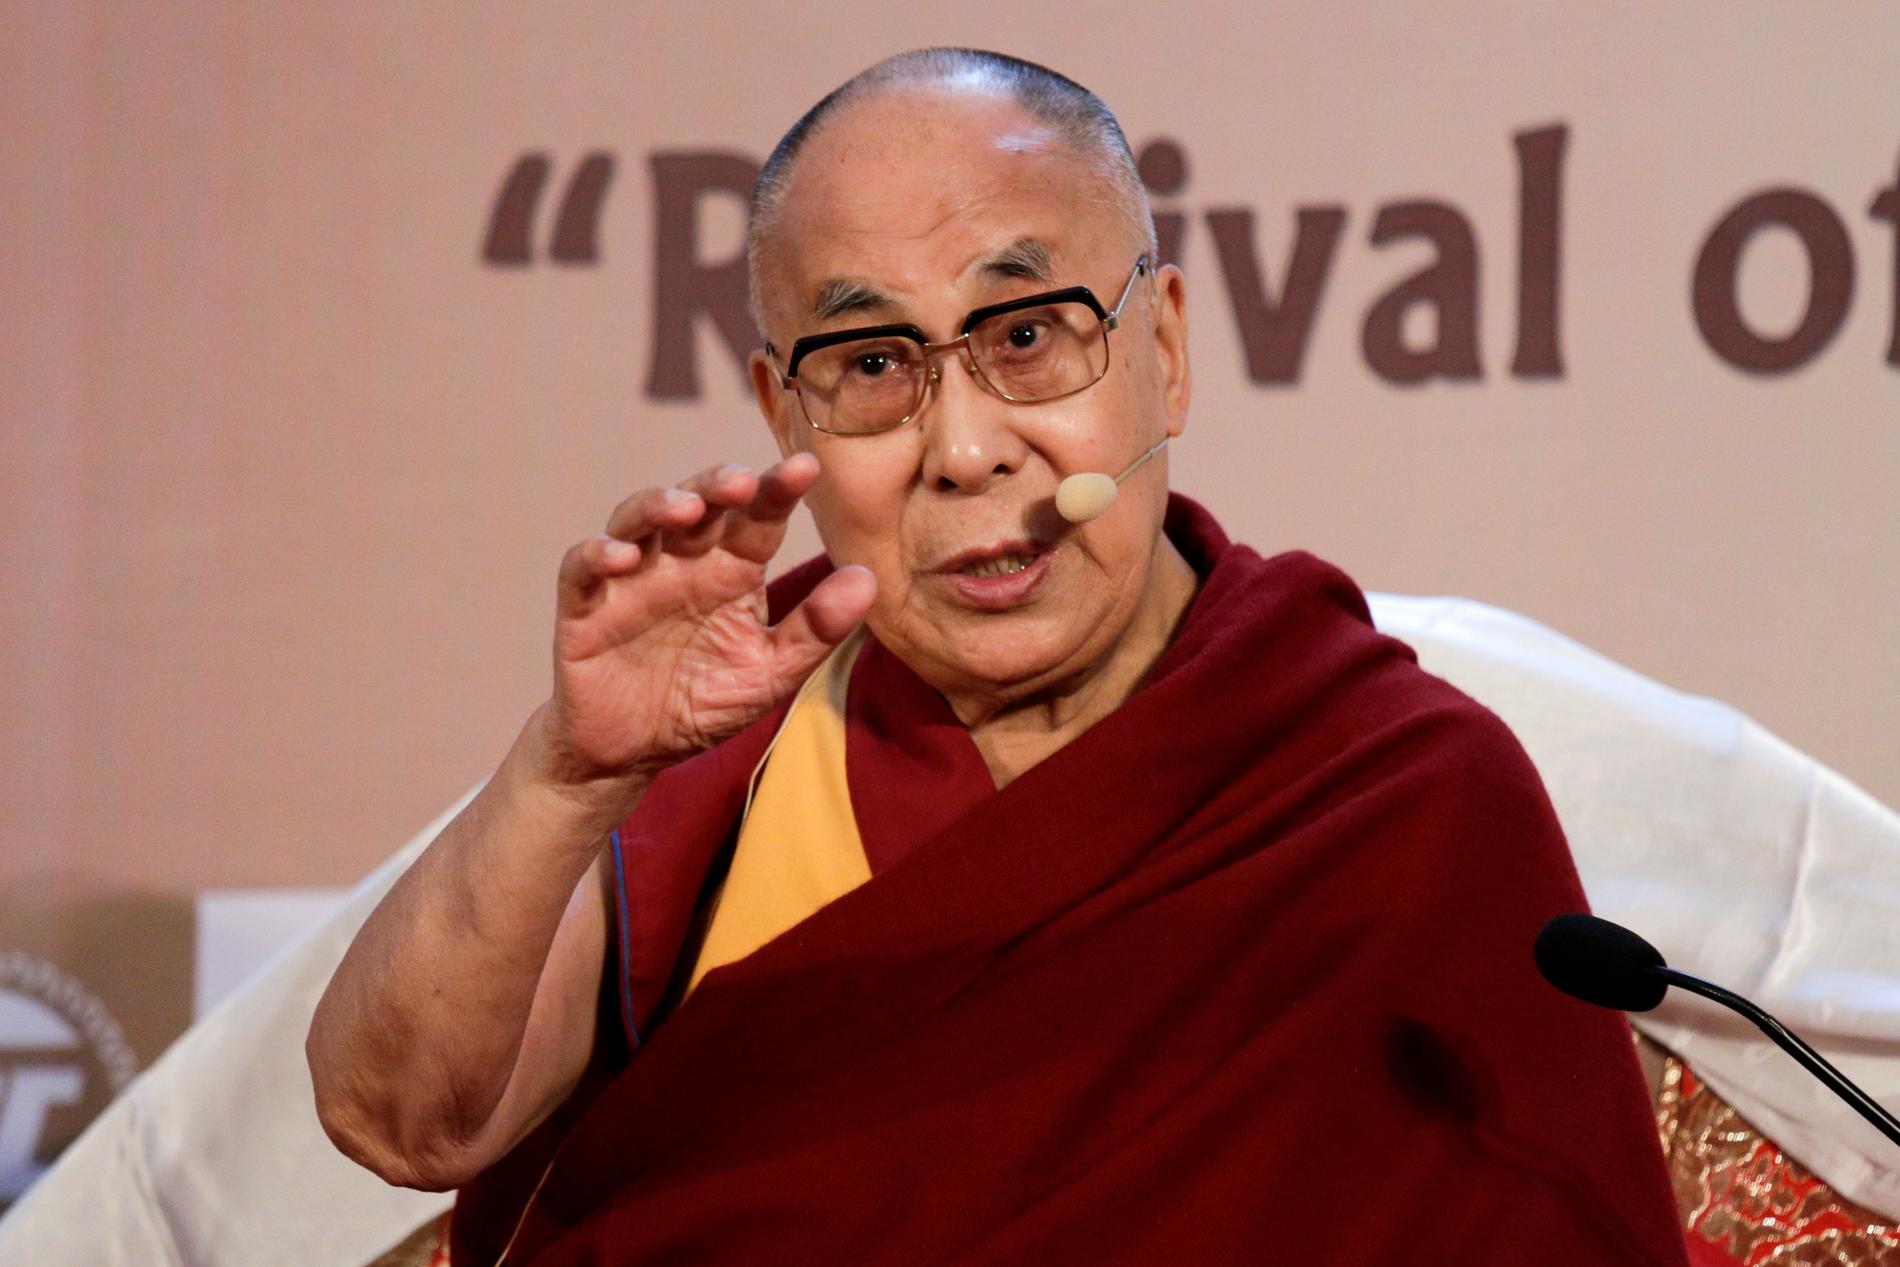 Dalai lama kommer till Malmö för att prata om "The Art of Happiness and Peace".